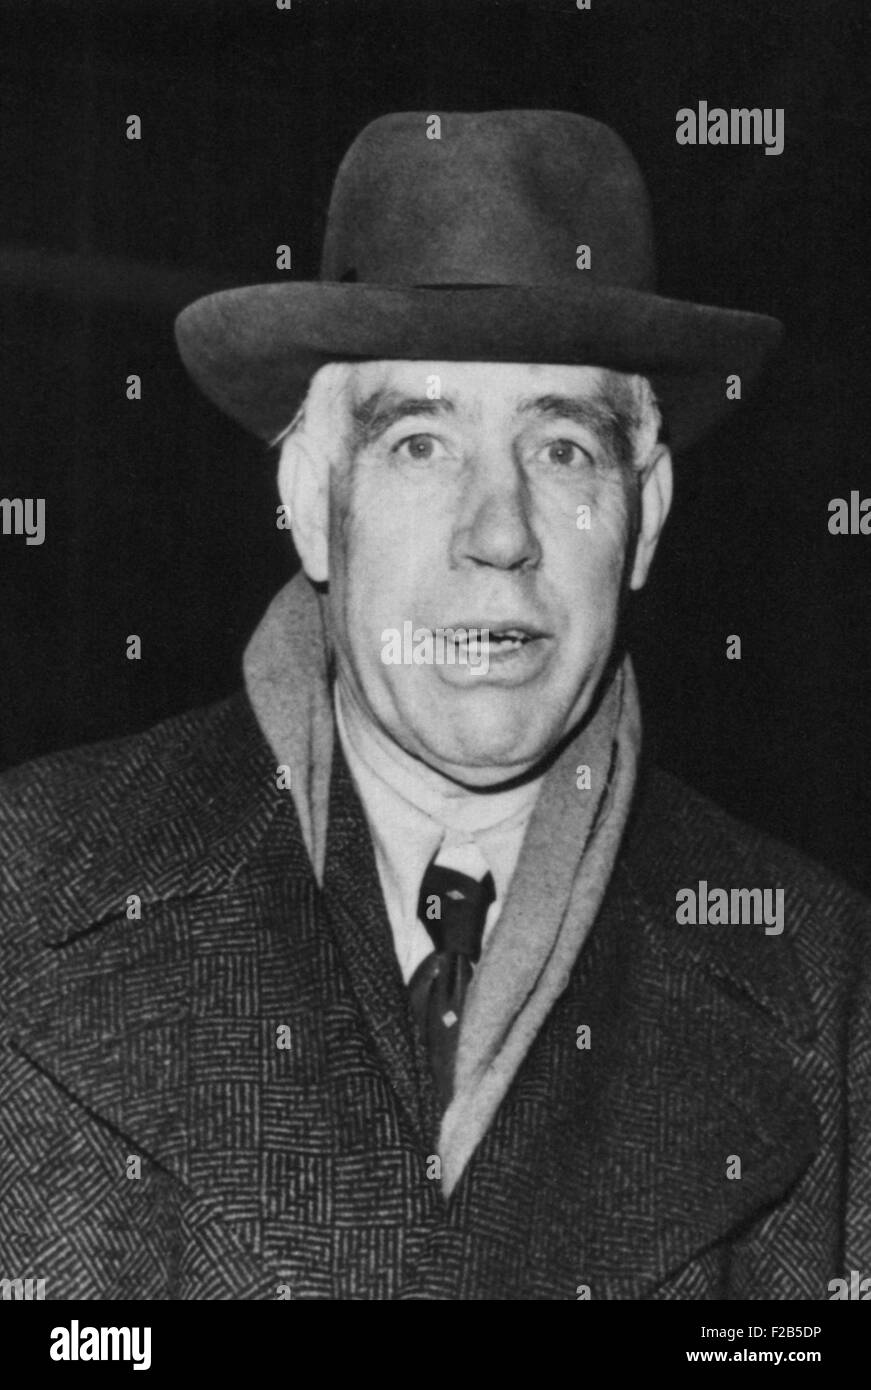 Niels Bohr, dänischer Physiker Nazis in 1943 entgangen. Danach trat er in die britische Atomwaffen-Projekt. Foto Datum: 17. Februar 1948 - (BSLOC 2014 17 27) Stockfoto